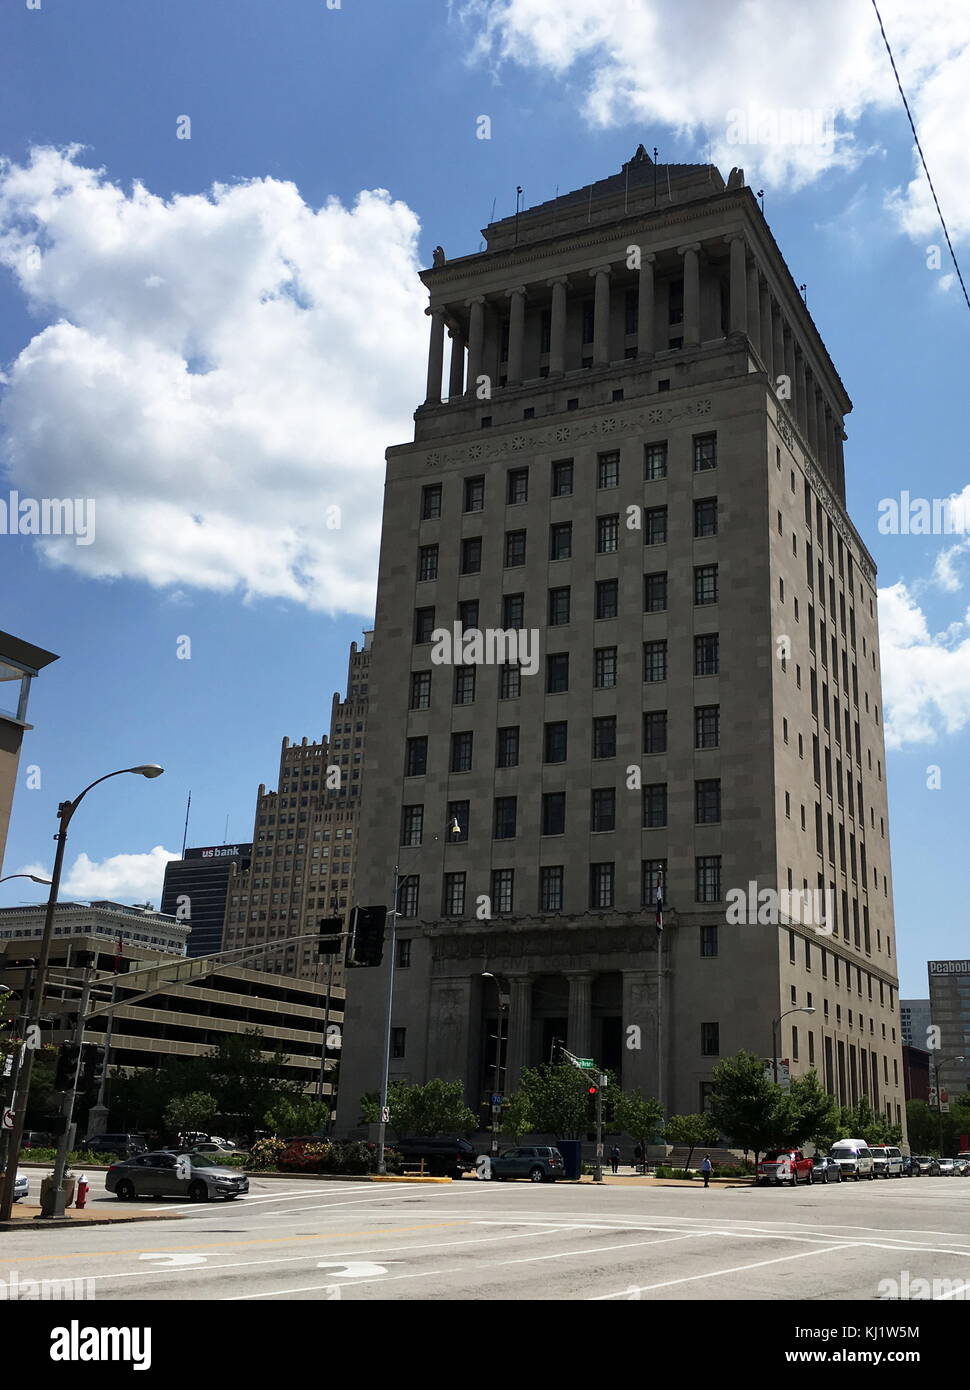 Blick auf die zivilen Gerichte Gebäude, ein Wahrzeichen Gericht Gebäude vom 22. Justizielle Circuit Court von Missouri in St. Louis, Missouri. Vom 21. Jahrhundert Stockfoto